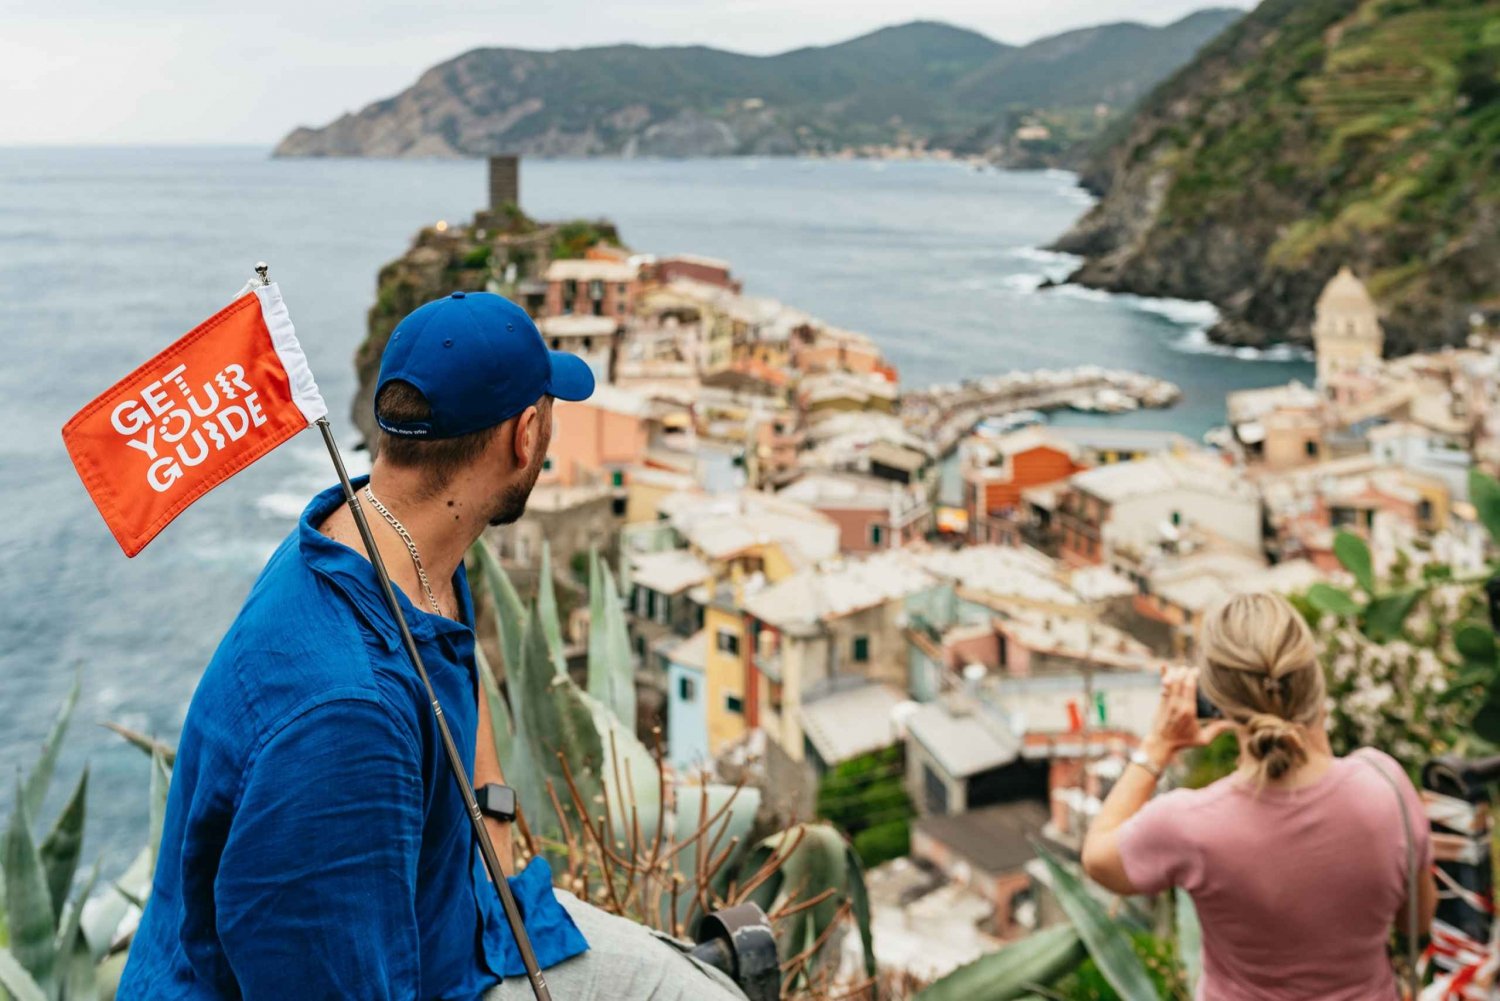 Florens: Cinque Terre dagsutflykt med valfri vandring